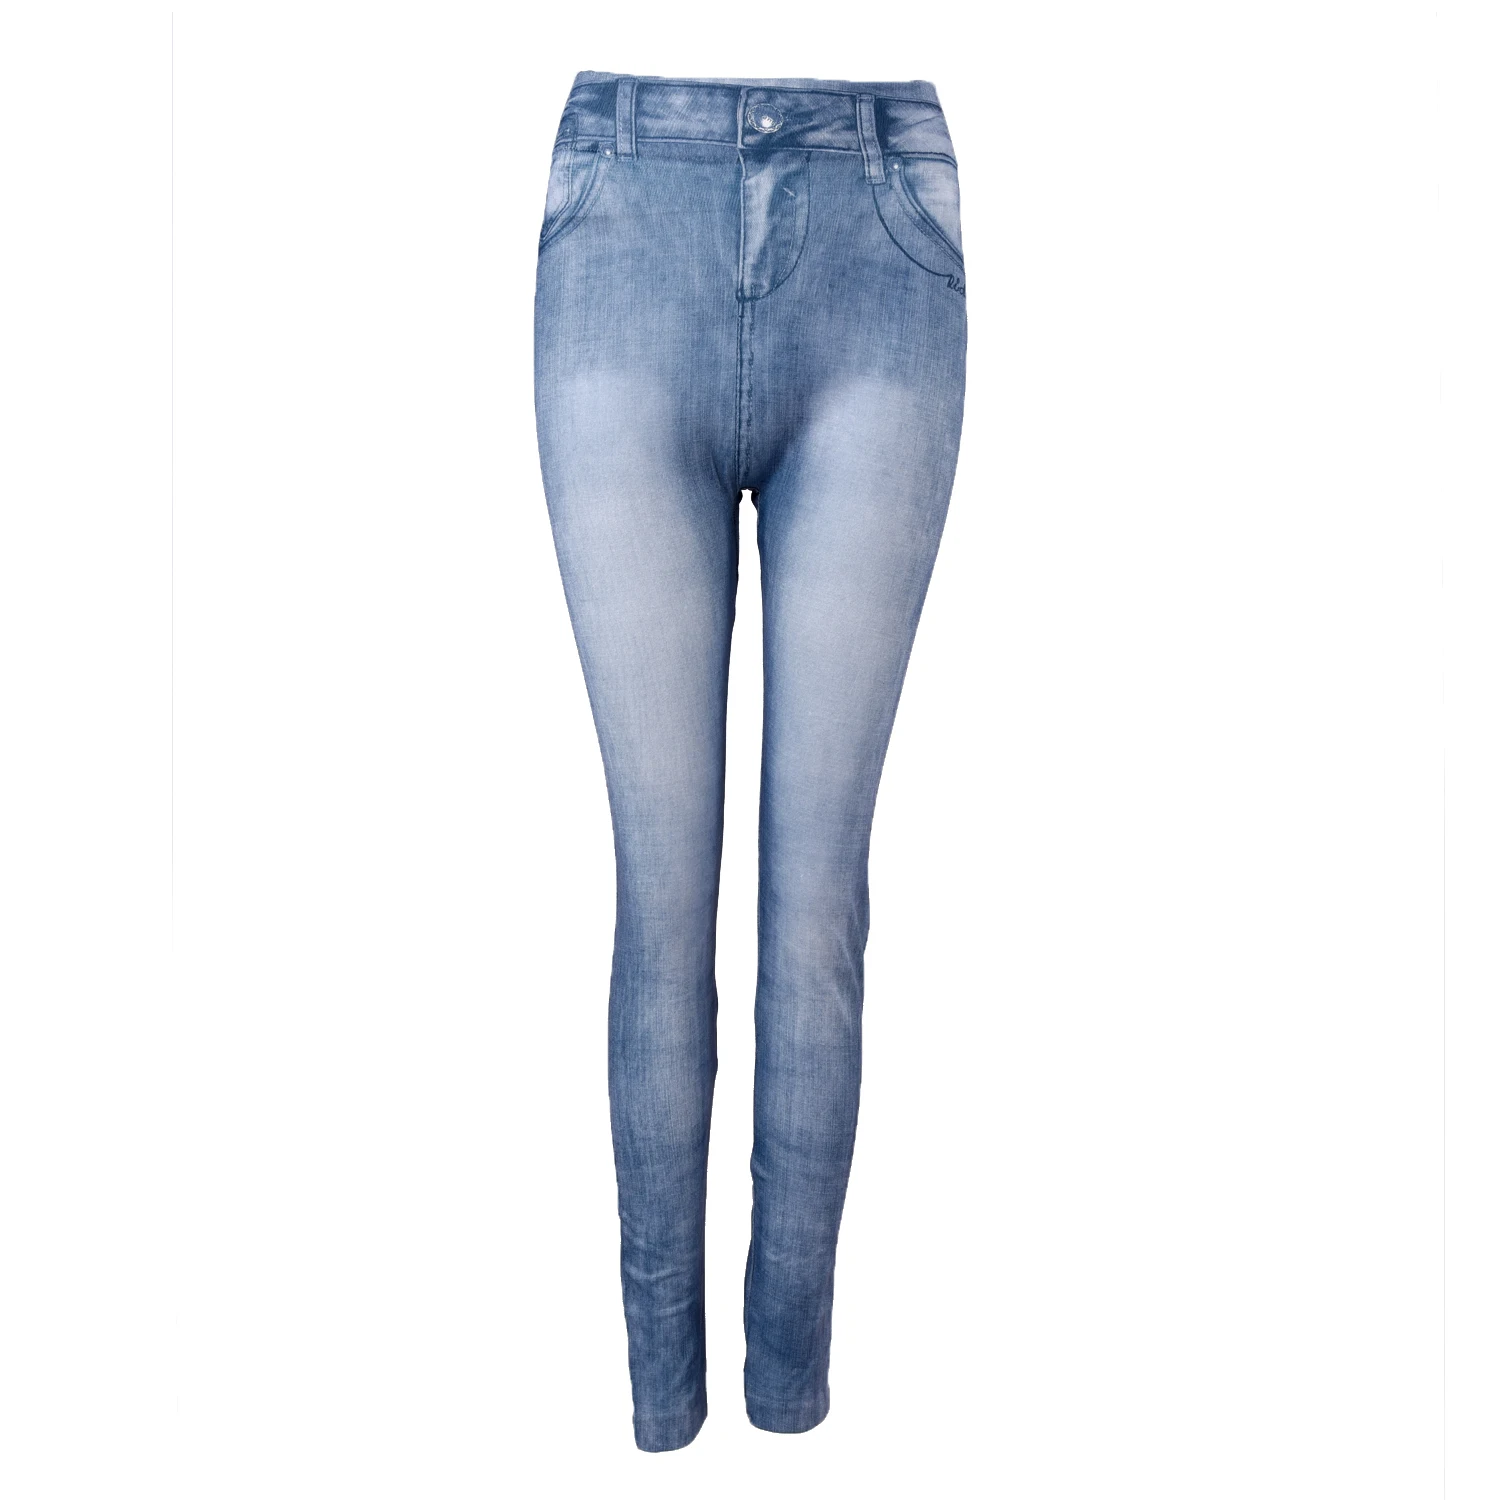 2018 Новый Для женщин джинсы обтягивающие леггинсы Эластичные штаны Синий Демисезонный